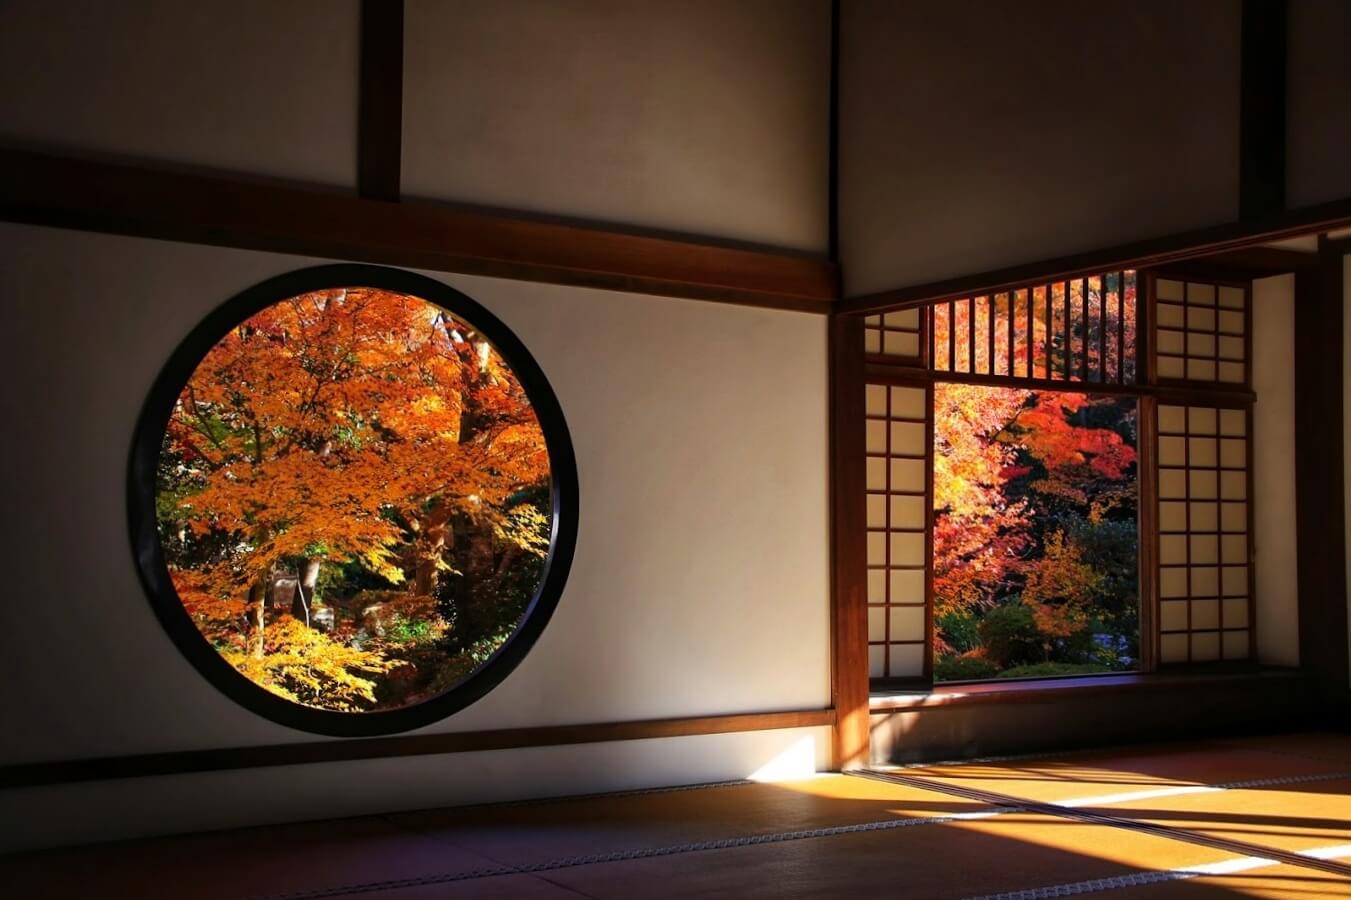 17 京都の旅 Vol 10 丸窓の源光庵 Heritager Com